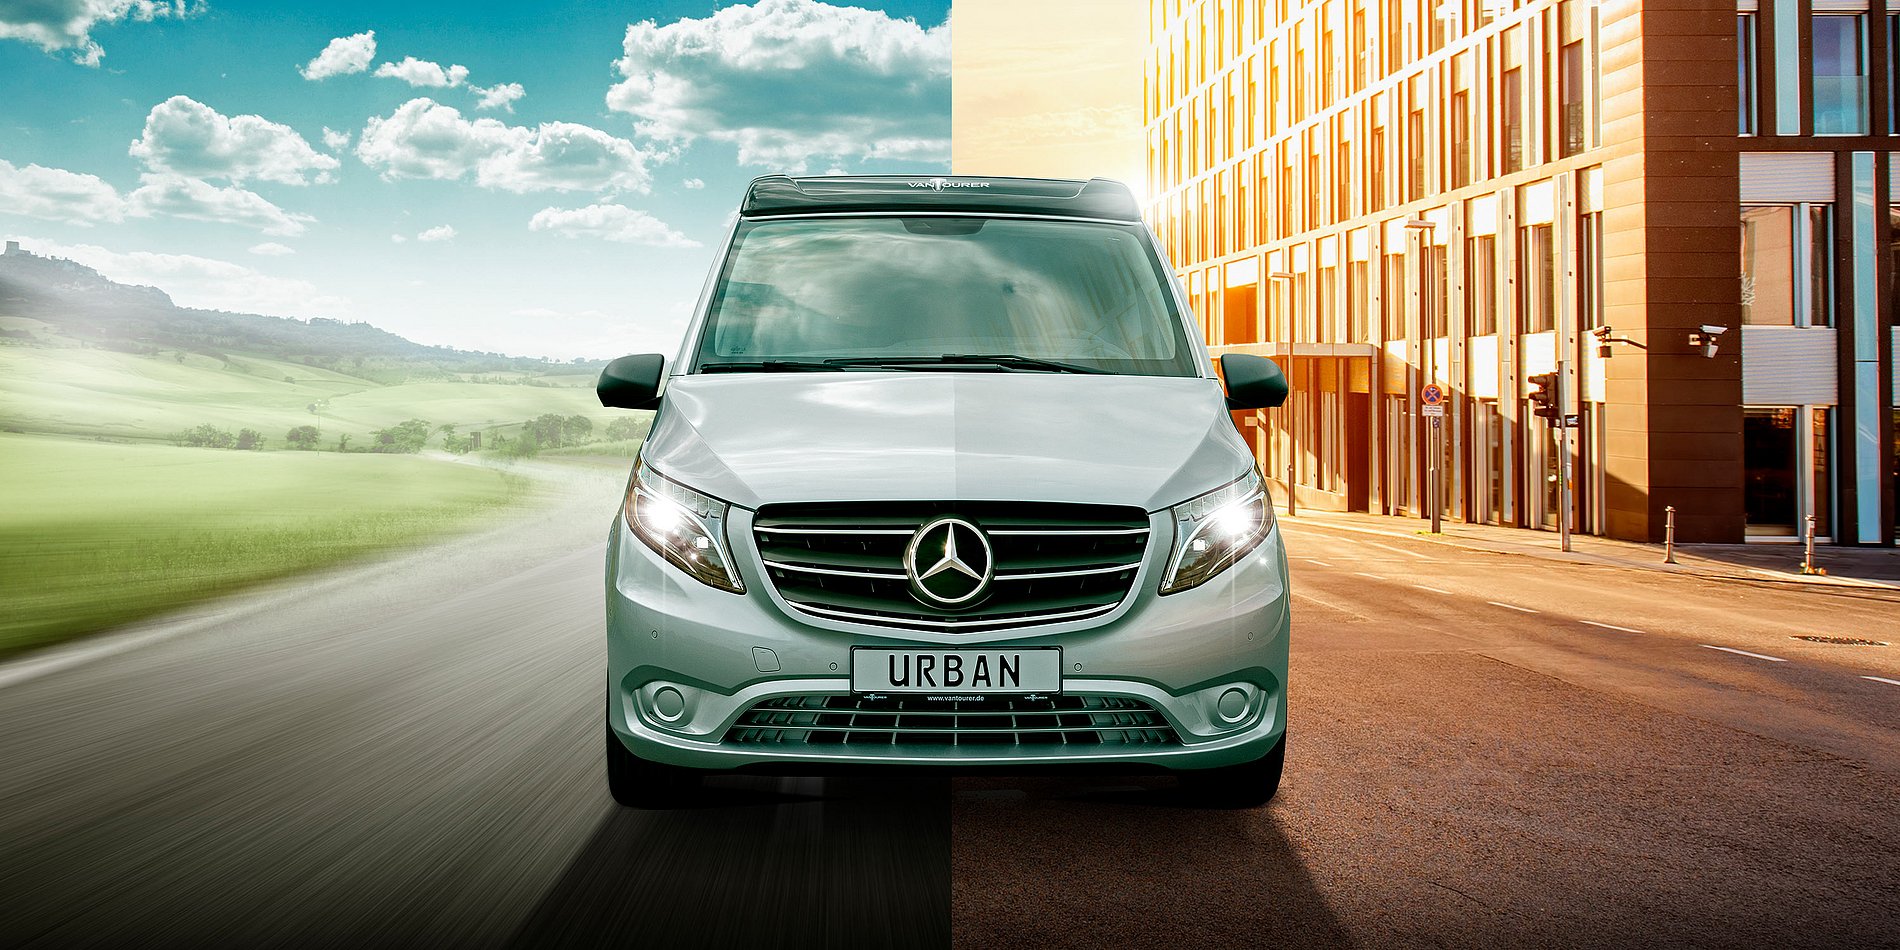  VANTourer Urban sur base Mercedes-Benz - le nouveau Camper Van